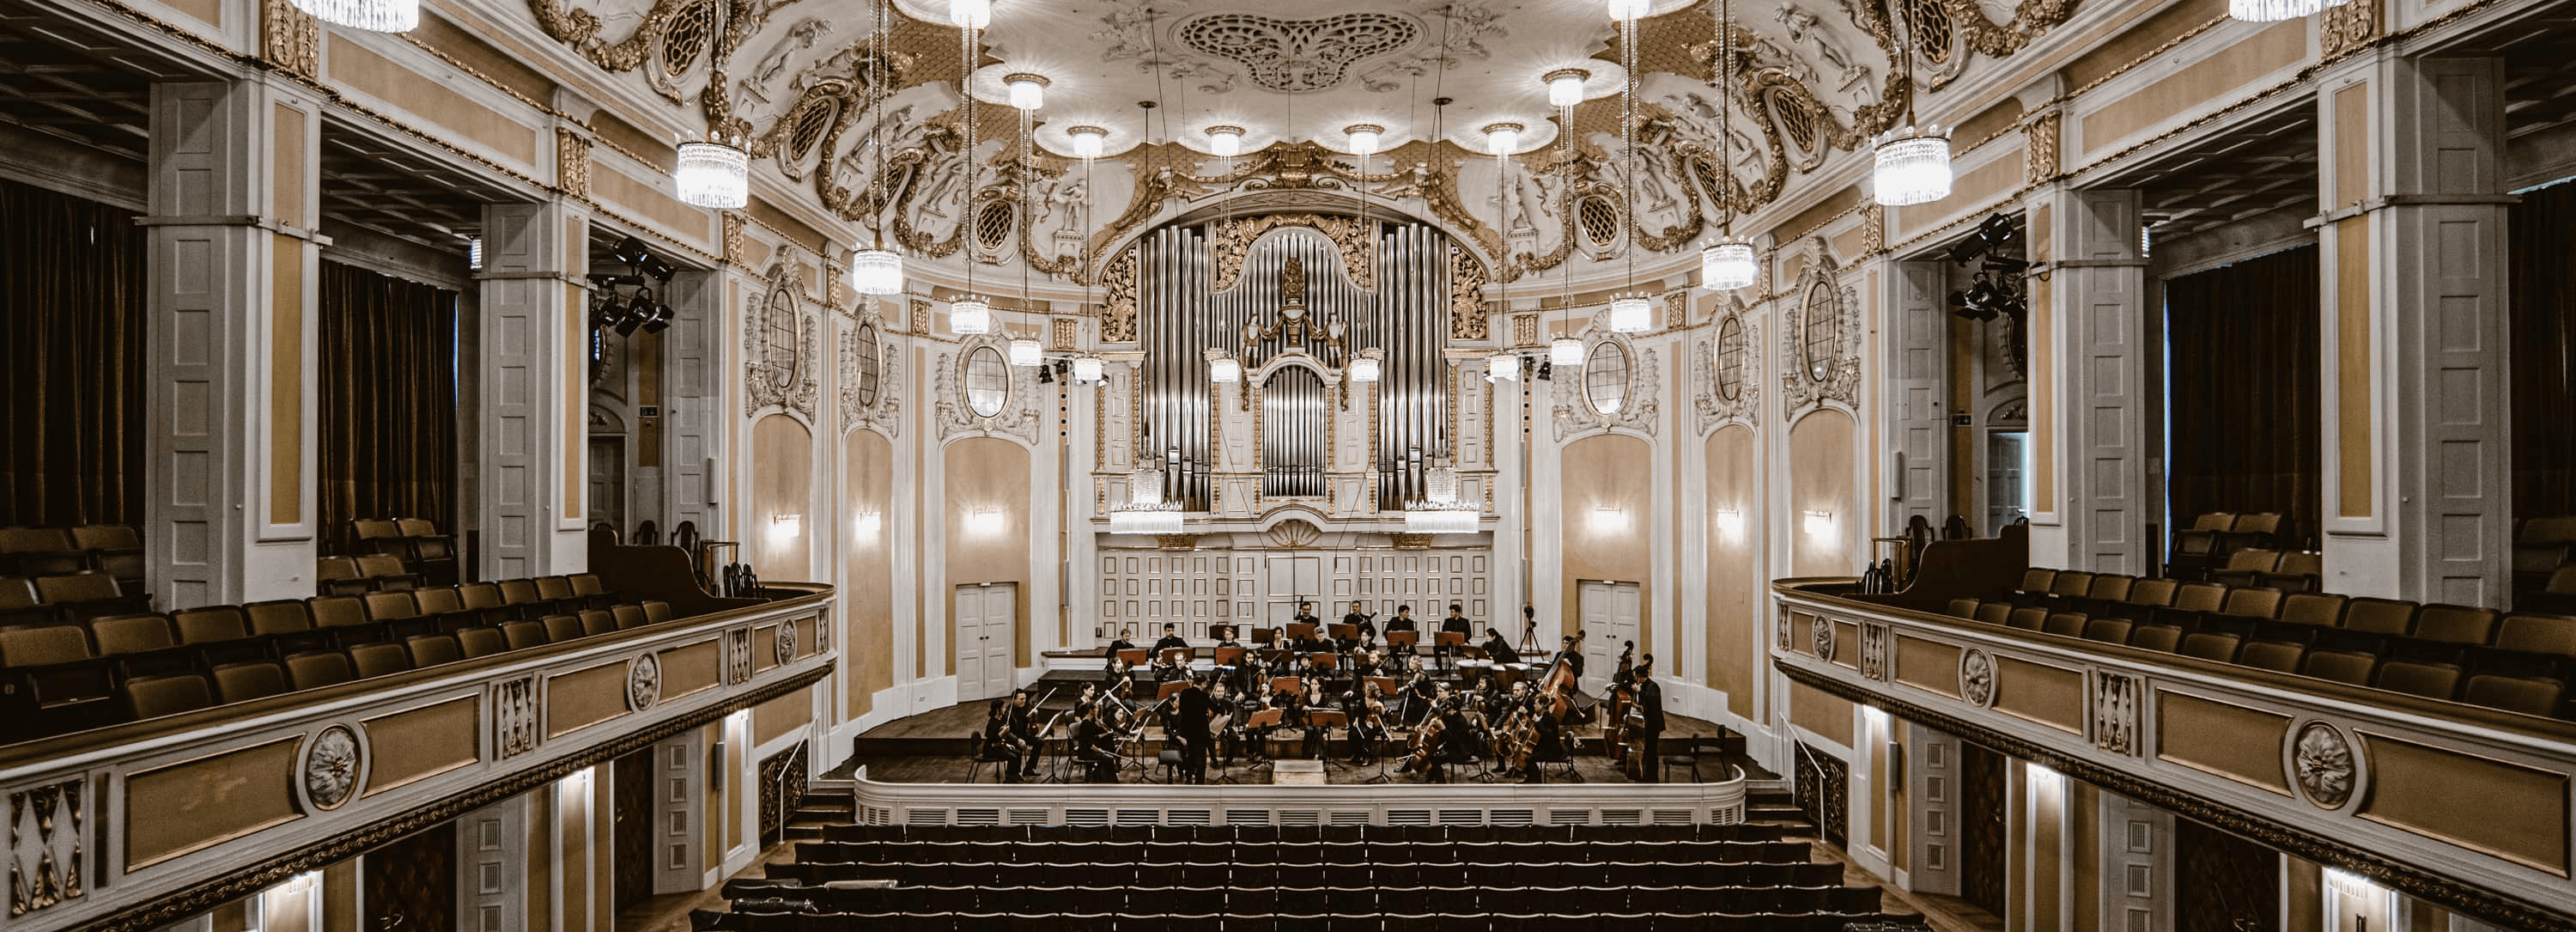 Prunkvoller Konzertsaal mit klassischer Architektur, mit einer großen Orgel auf der Bühne, Kristallleuchtern und gepolsterten Sitzplätzen, während ein Live-Orchester probt.